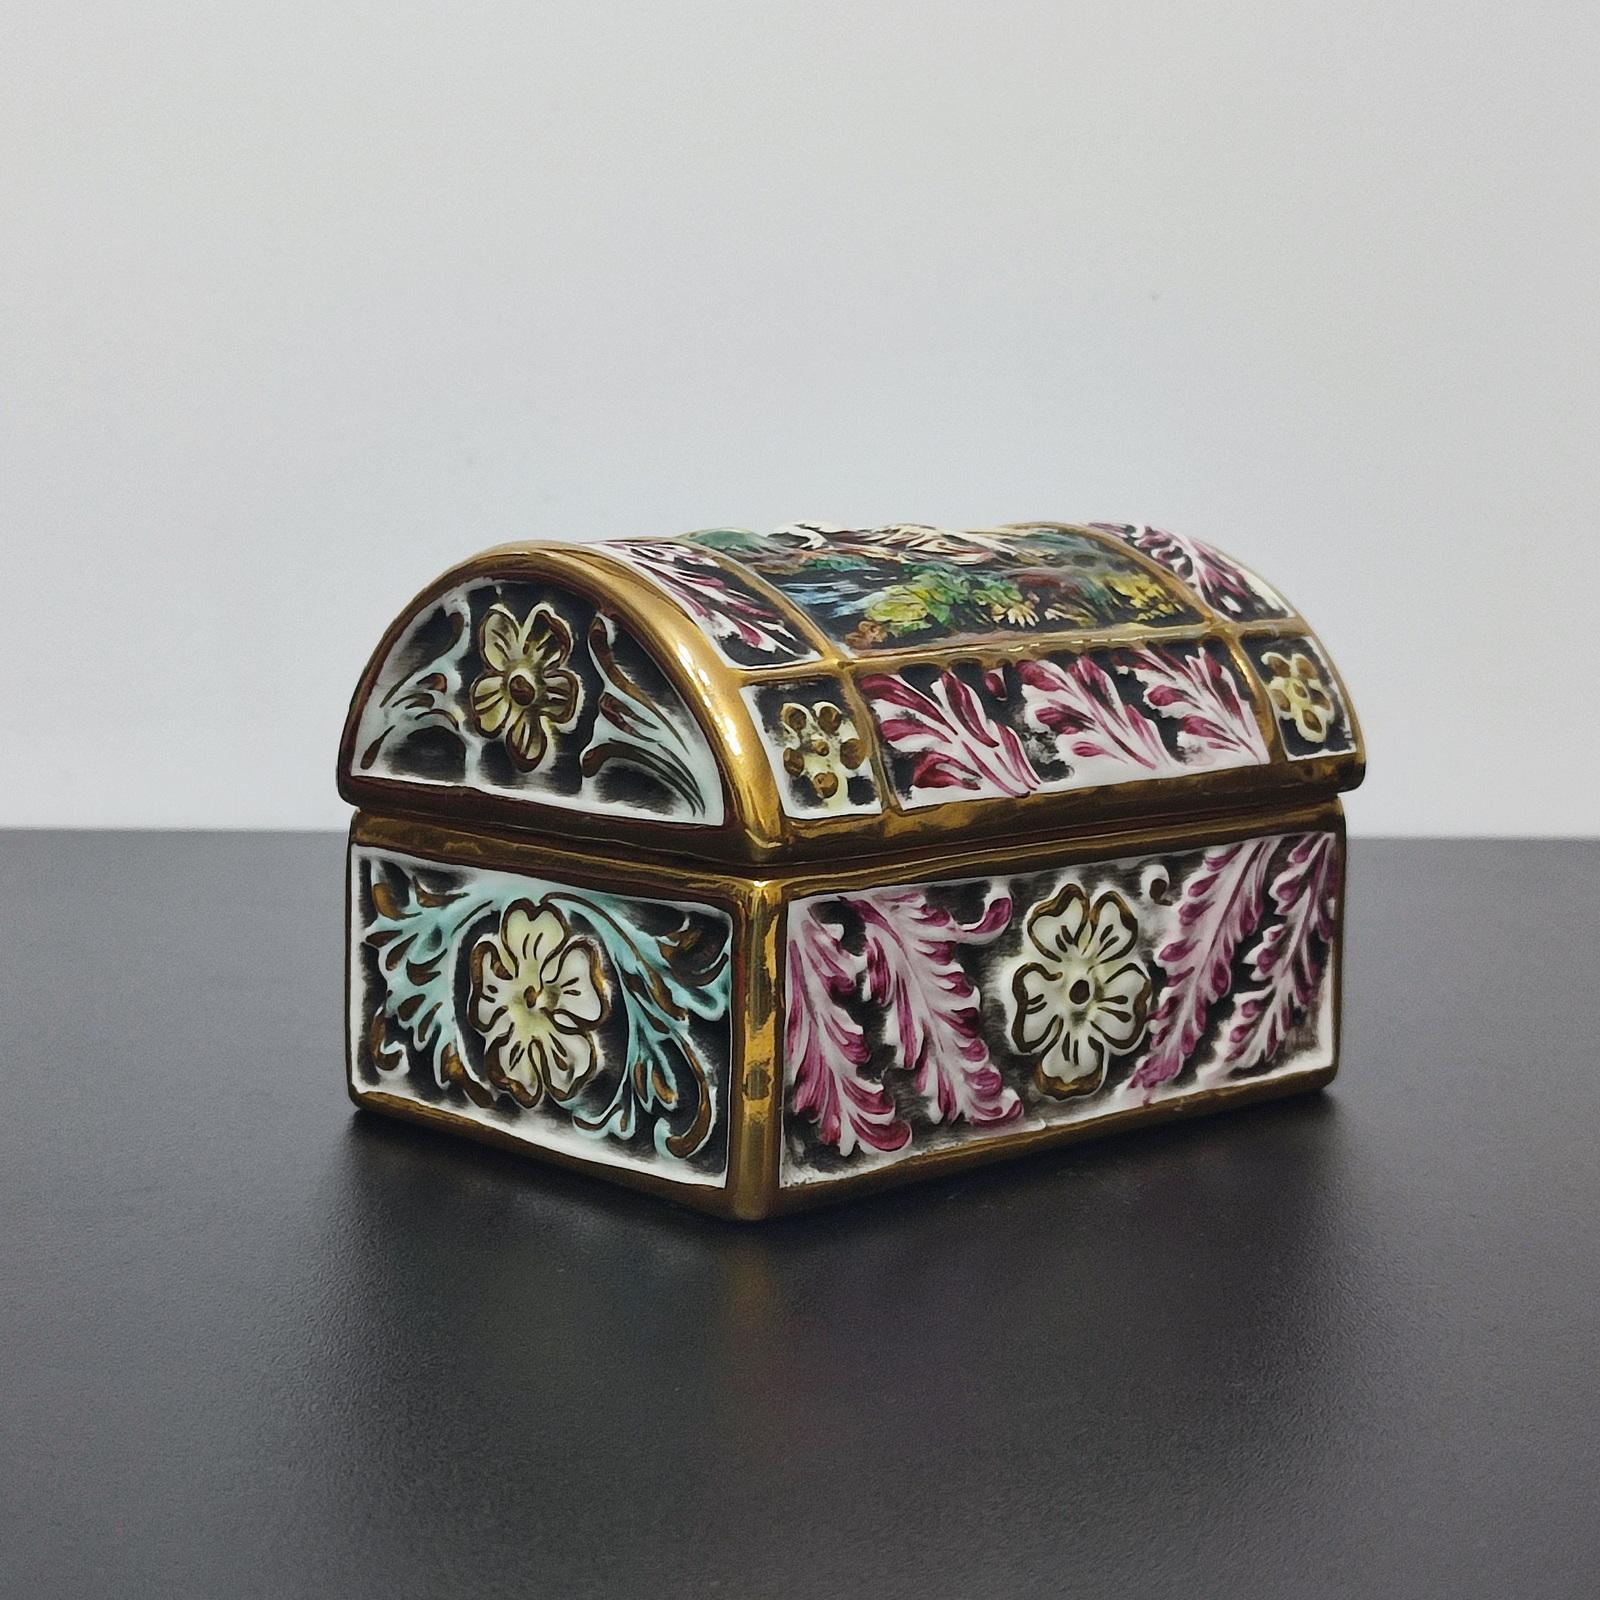 italien Capodimonte Porcelain Chest, Jewelry Box, Italy Mid 20th Century - LIVRAISON GRATUITE en vente